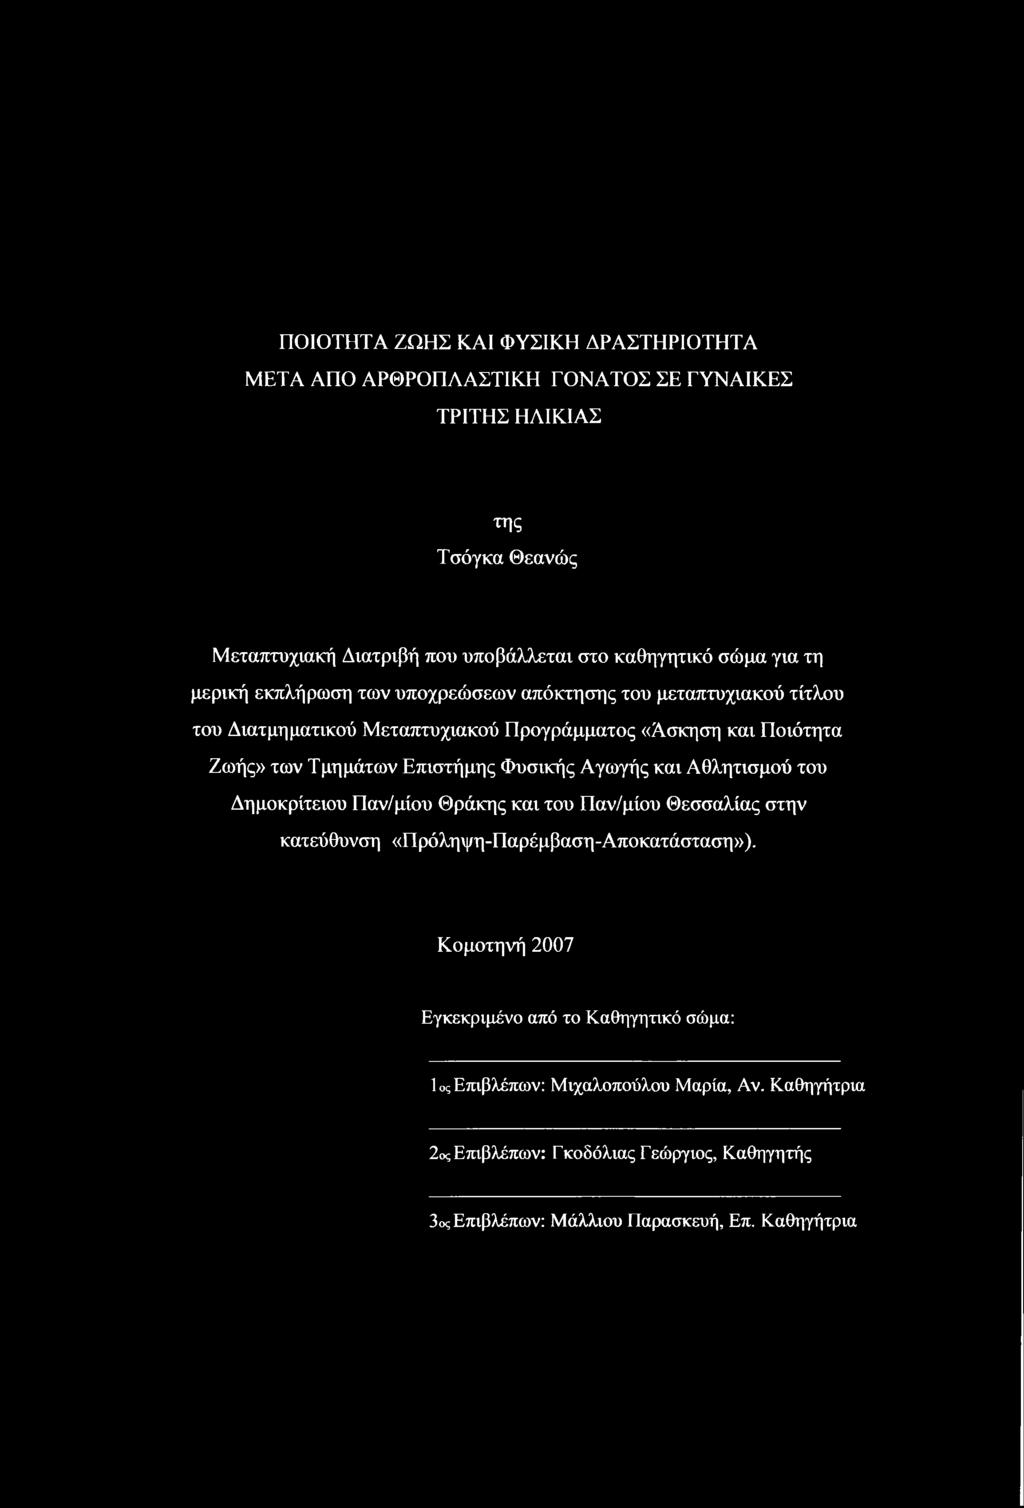 Επιστήμης Φυσικής Αγωγής και Αθλητισμού του Δημοκρίτειου Παν/μίου Θράκης και του Παν/μίου Θεσσαλίας στην κατεύθυνση «Πρόληψη-Παρέμβαση-Αποκατάσταση»).